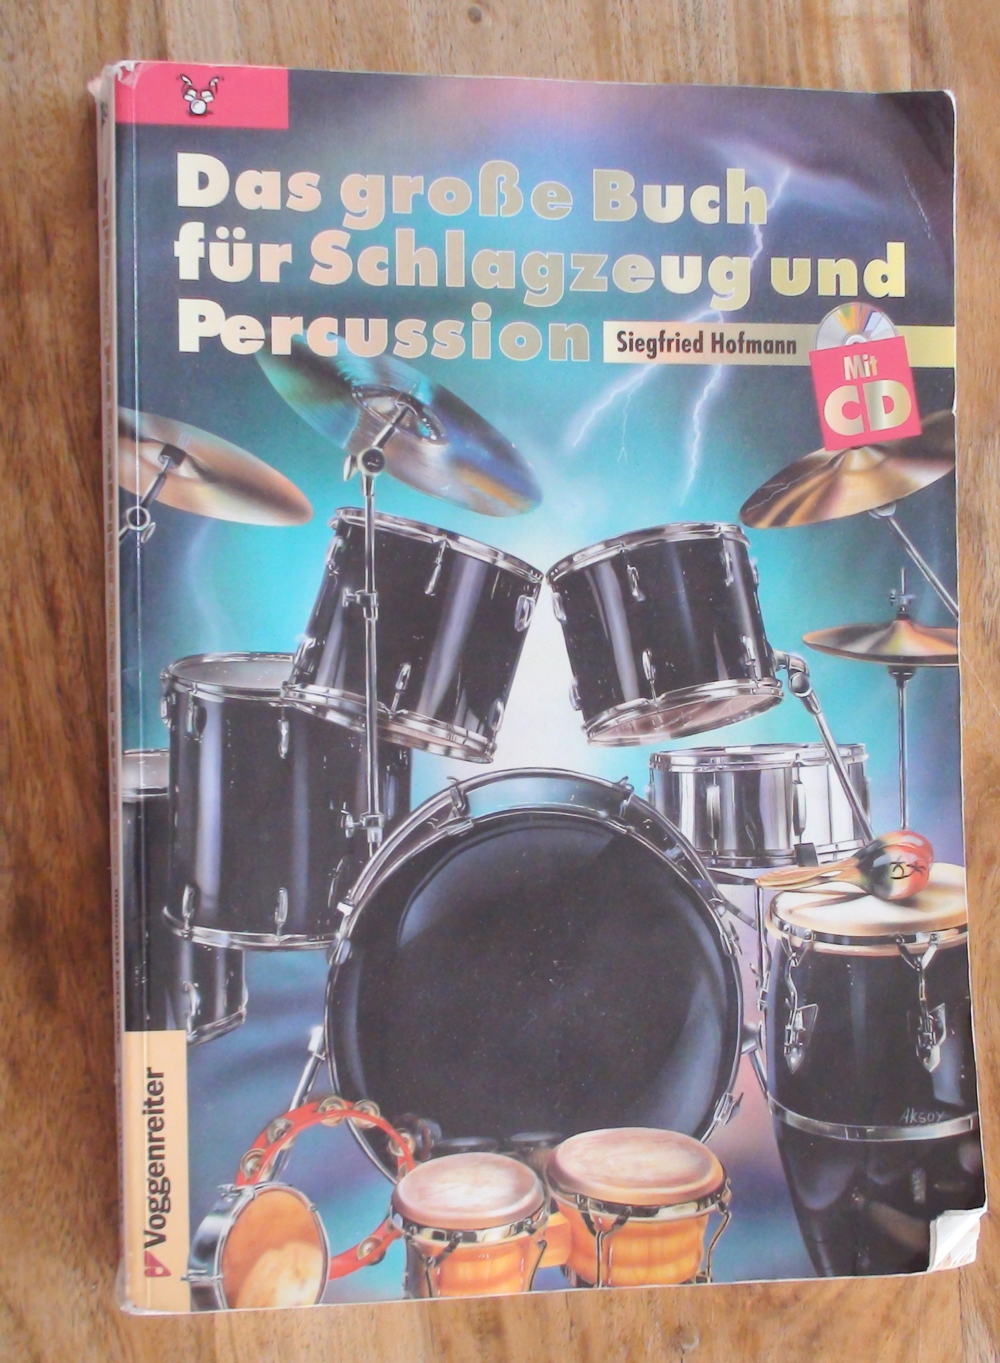 Das große Buch für Schlagzeug und Percussion OHNE CD, S. Hofmann